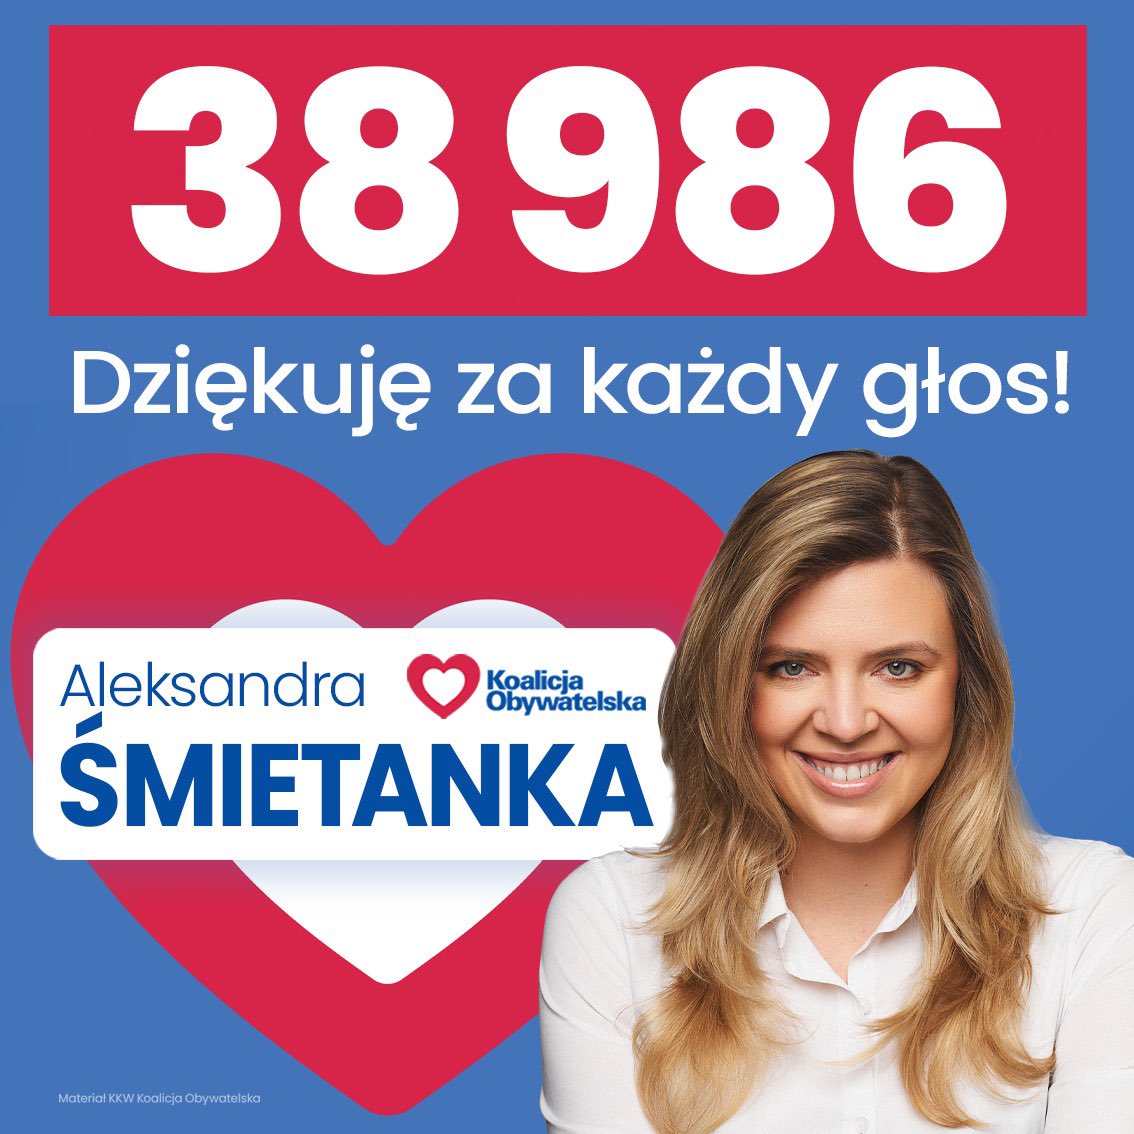 Prawie 39 tys. głosów do sejmiku Mazowsza! Taki wynik wykręciła Ola. Rozwaliła system. :) Dziś #FF dla .@asmietanka, bo można się od niej uczyć, jak prowadzić kampanię! :)